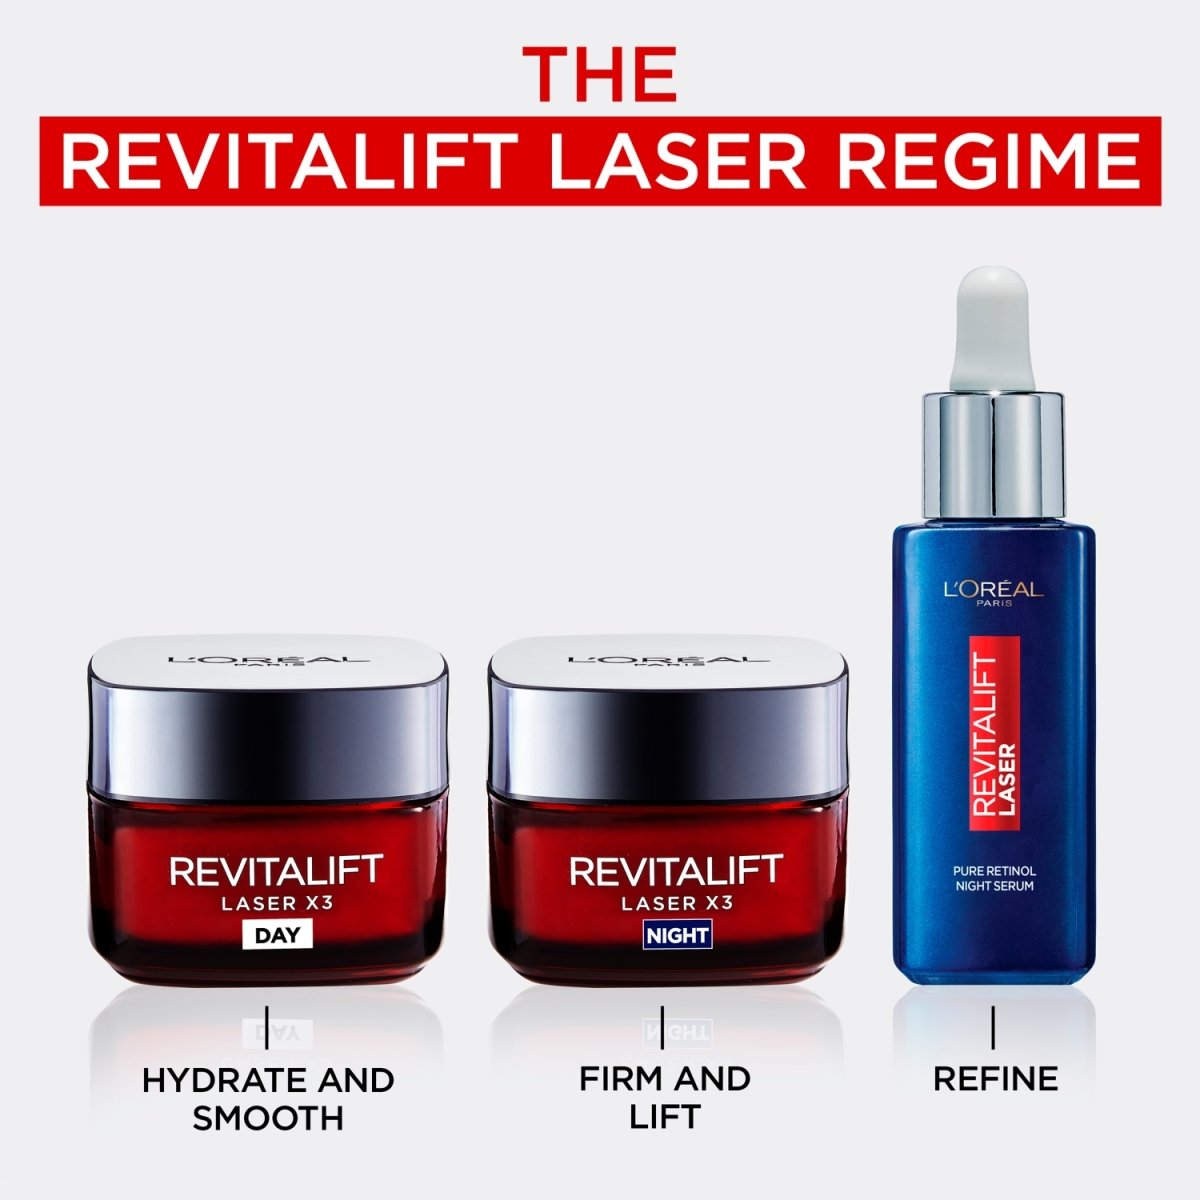 L'Oreal Revitalift Laser Renew Night Cream 50ml - Intamarque 3600522480129